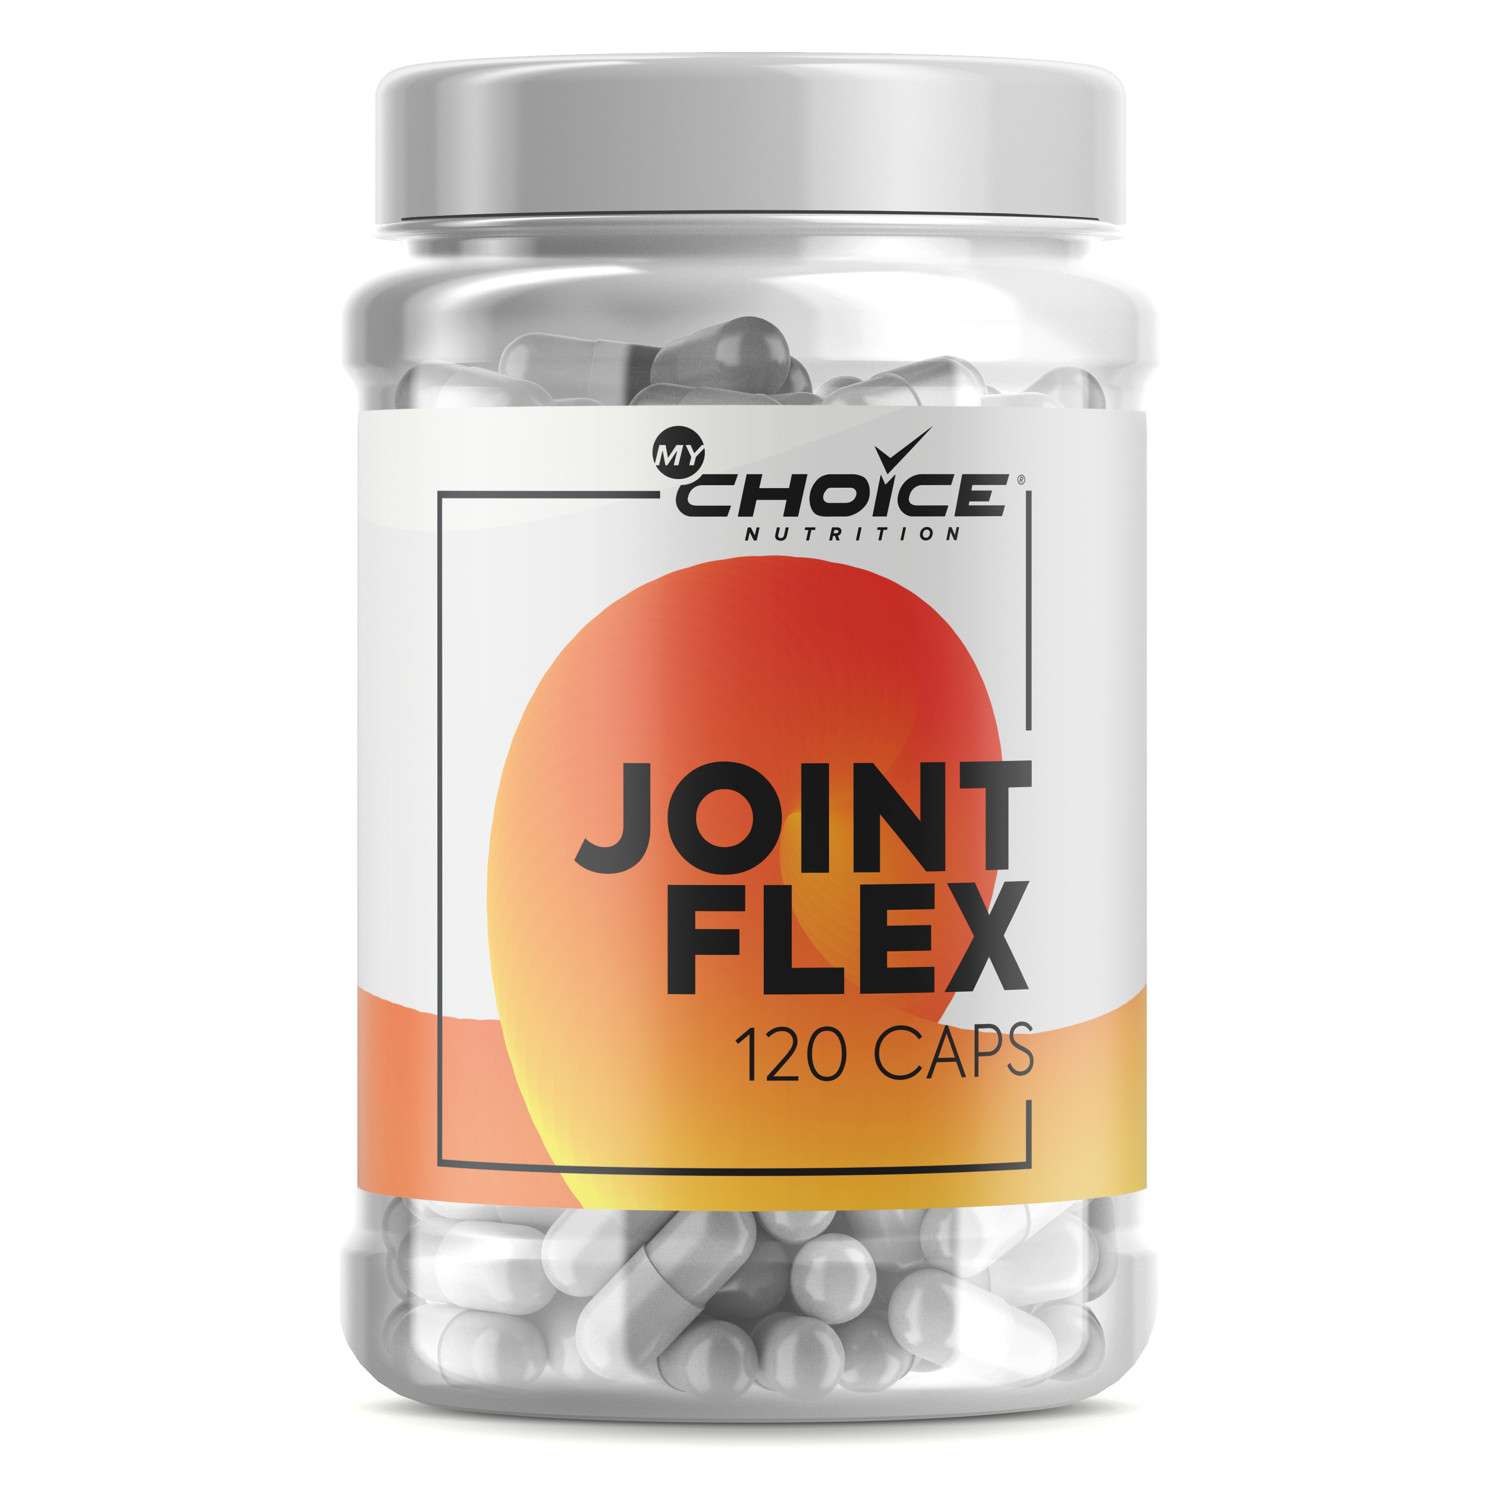 Специализированный пищевой продукт для питания спортсменов MyChoice Nutrition Joint Flex 120капсул - фото 1